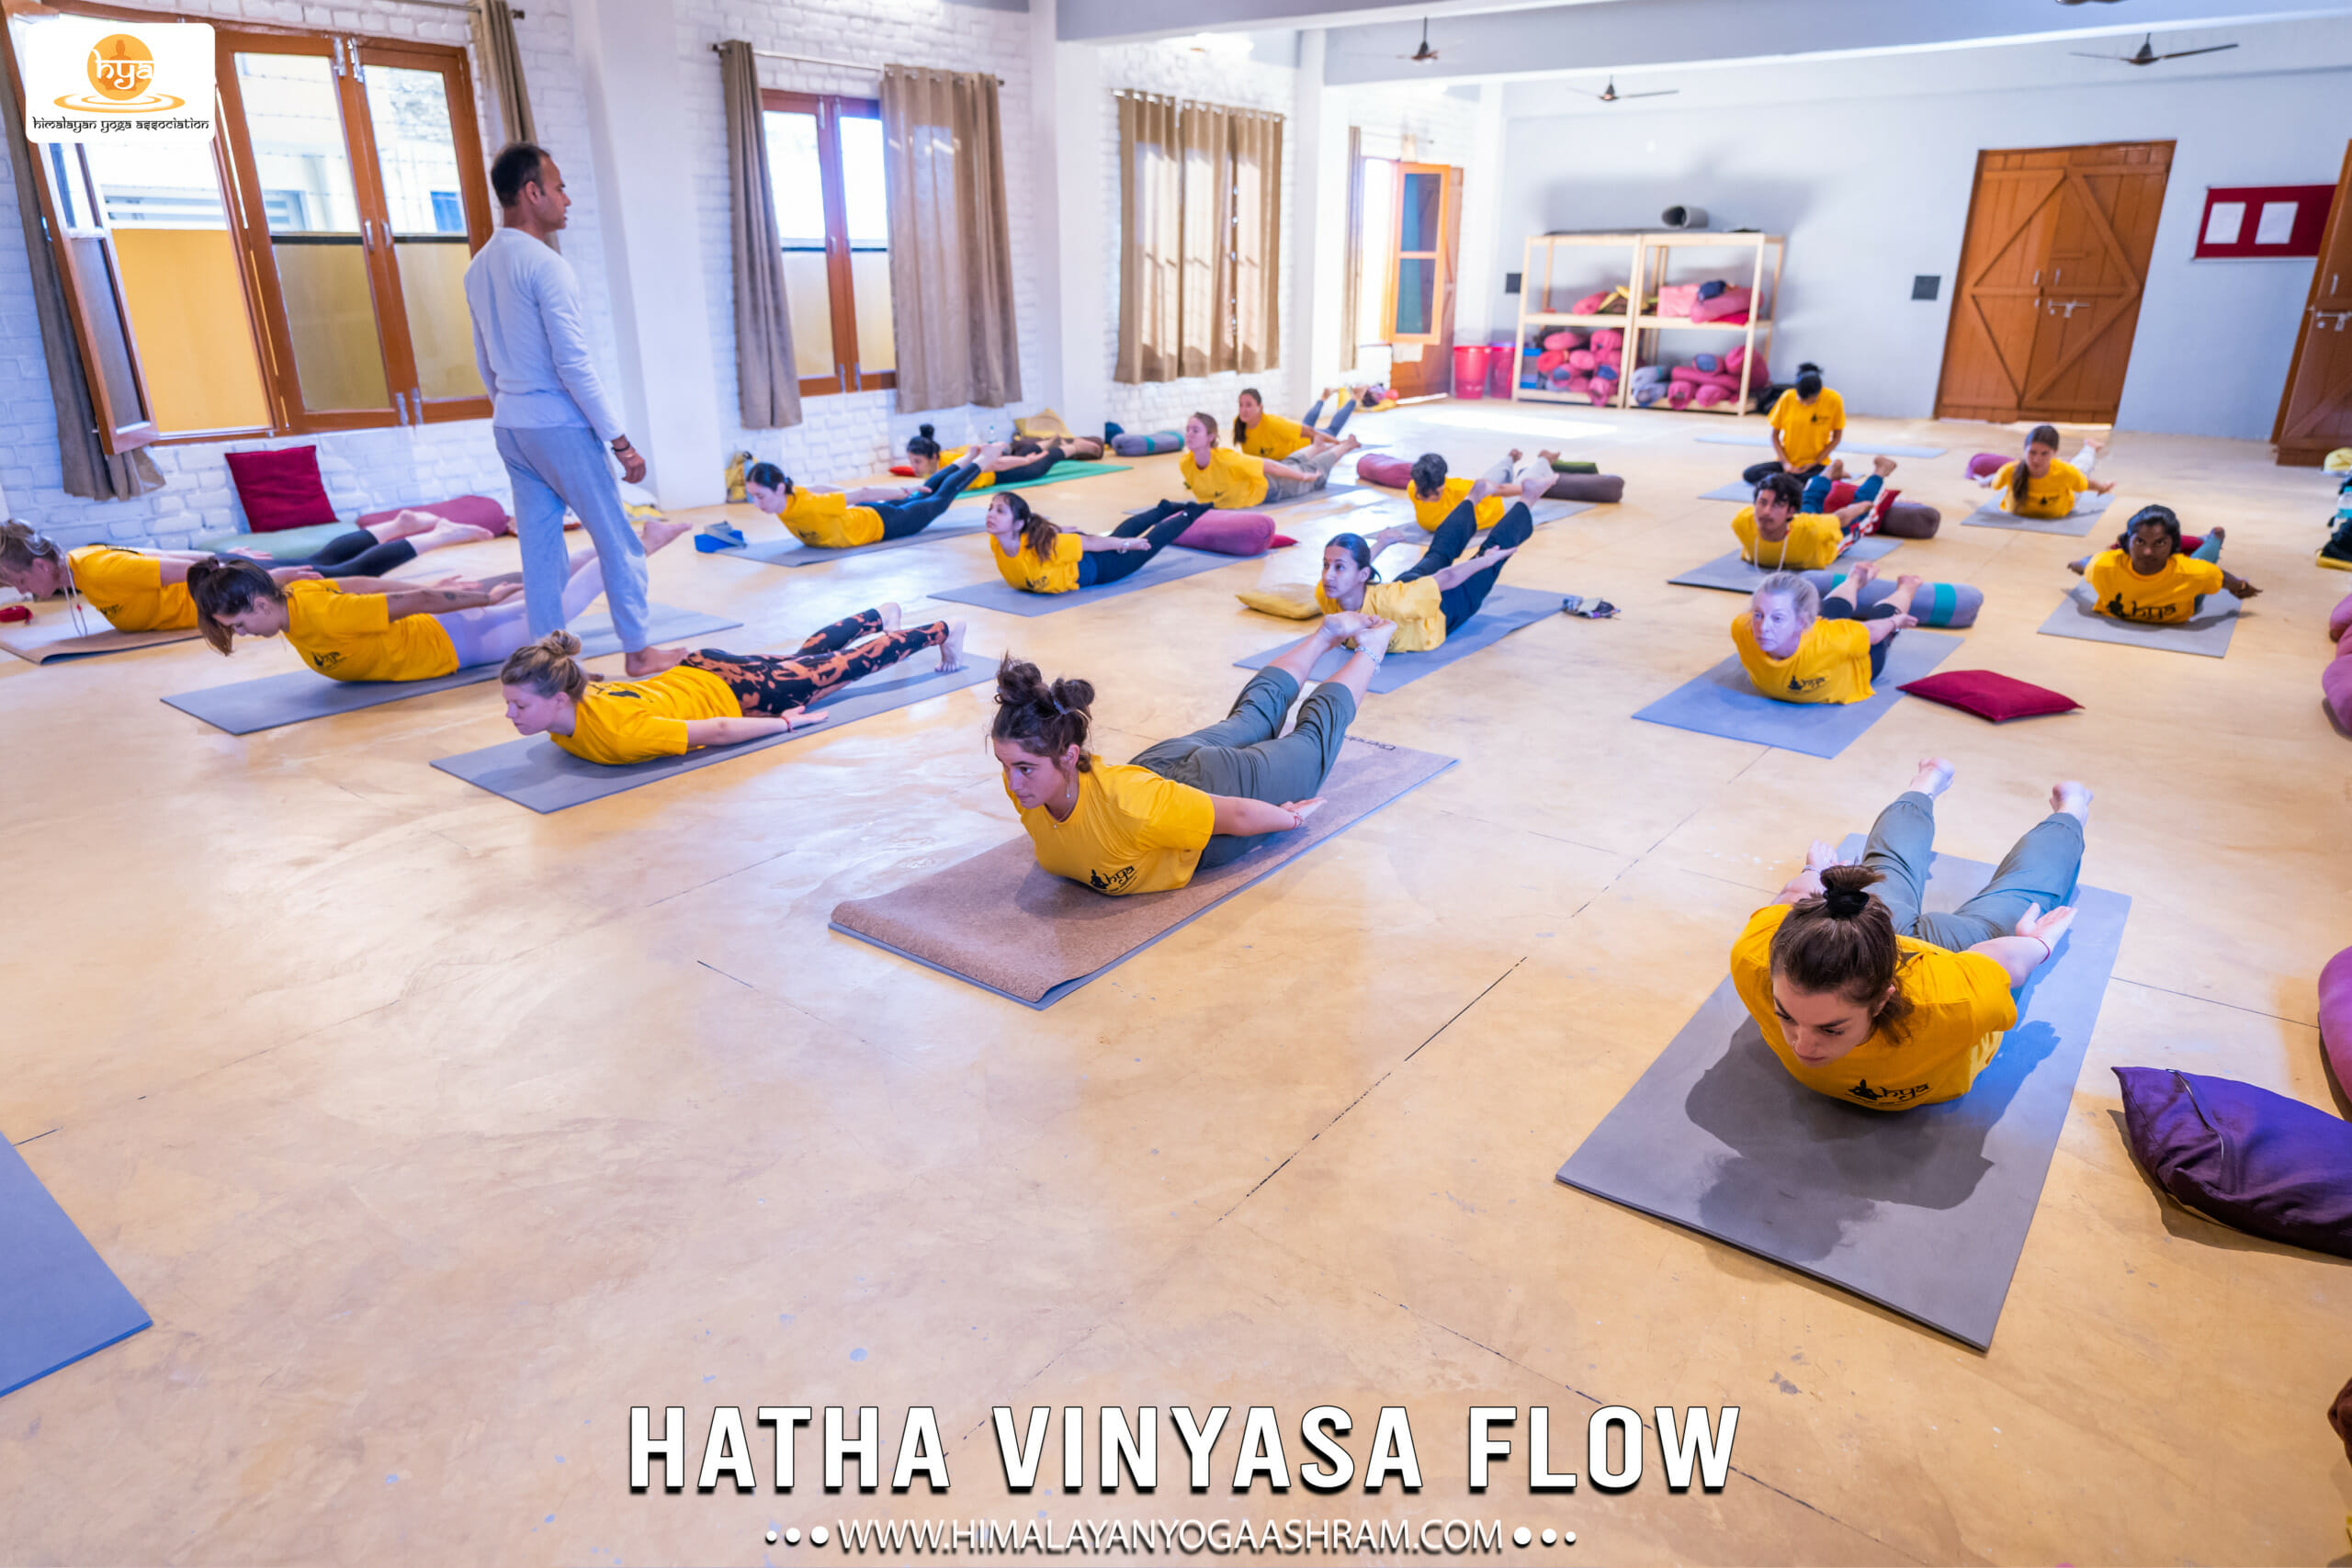 Hatha Vinyasa Flow